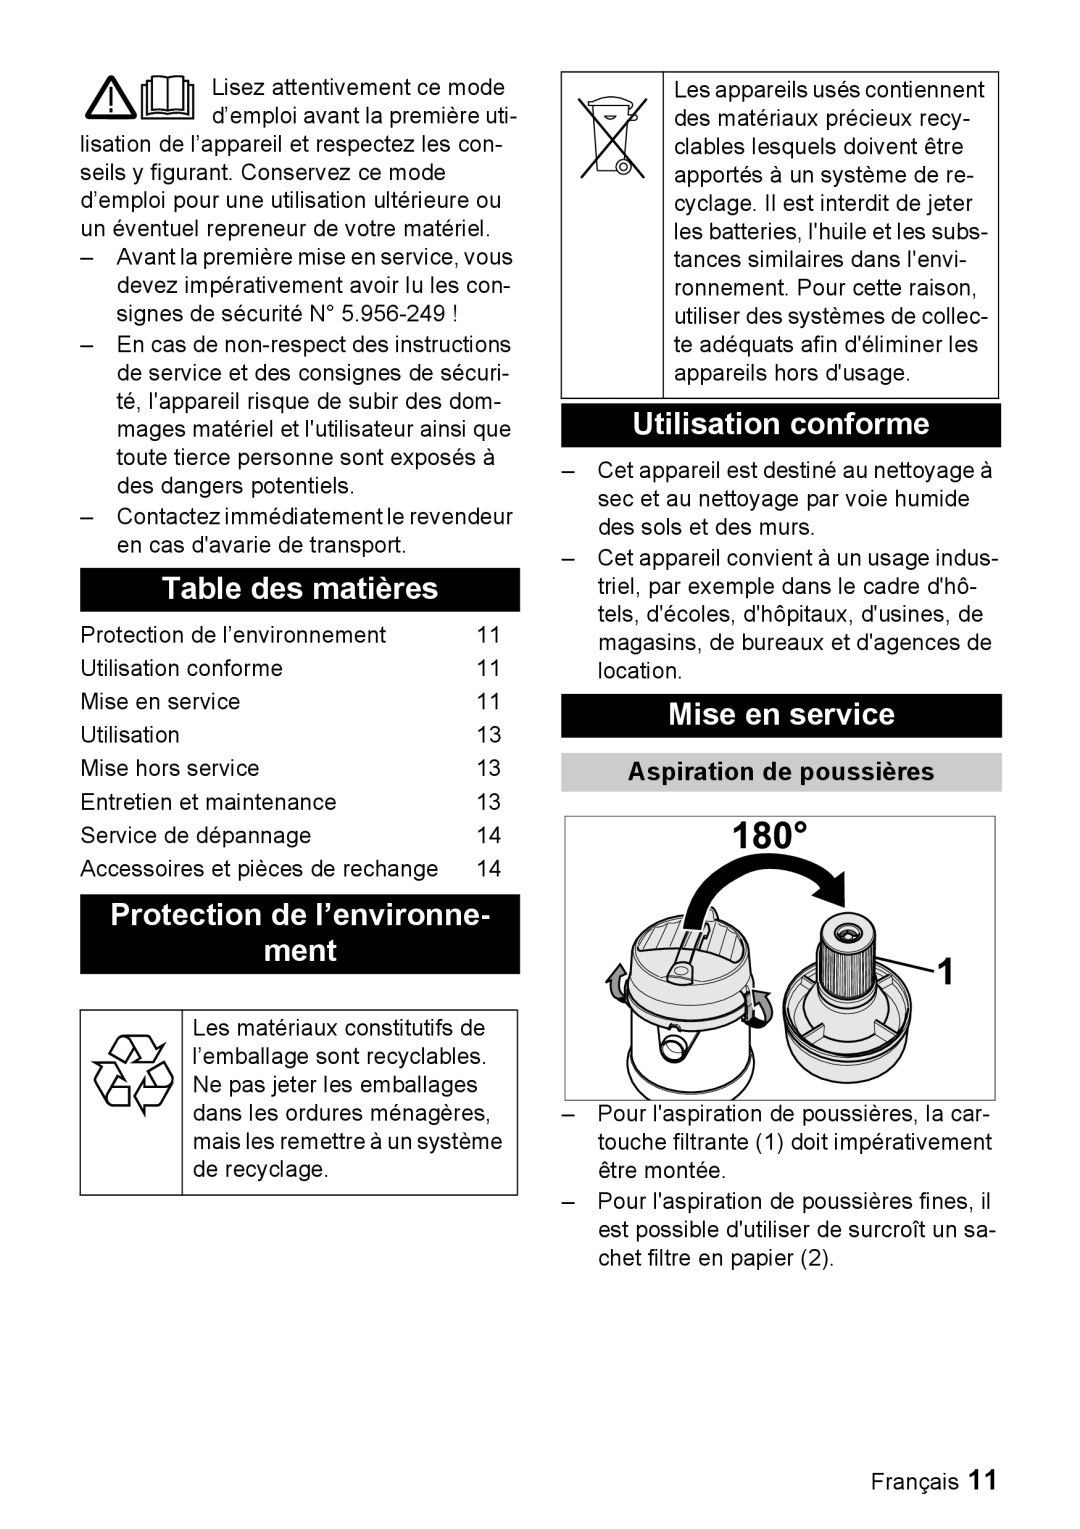 Windsor 7 manual Table des matières, Protection de l’environne ment, Utilisation conforme, Mise en service 